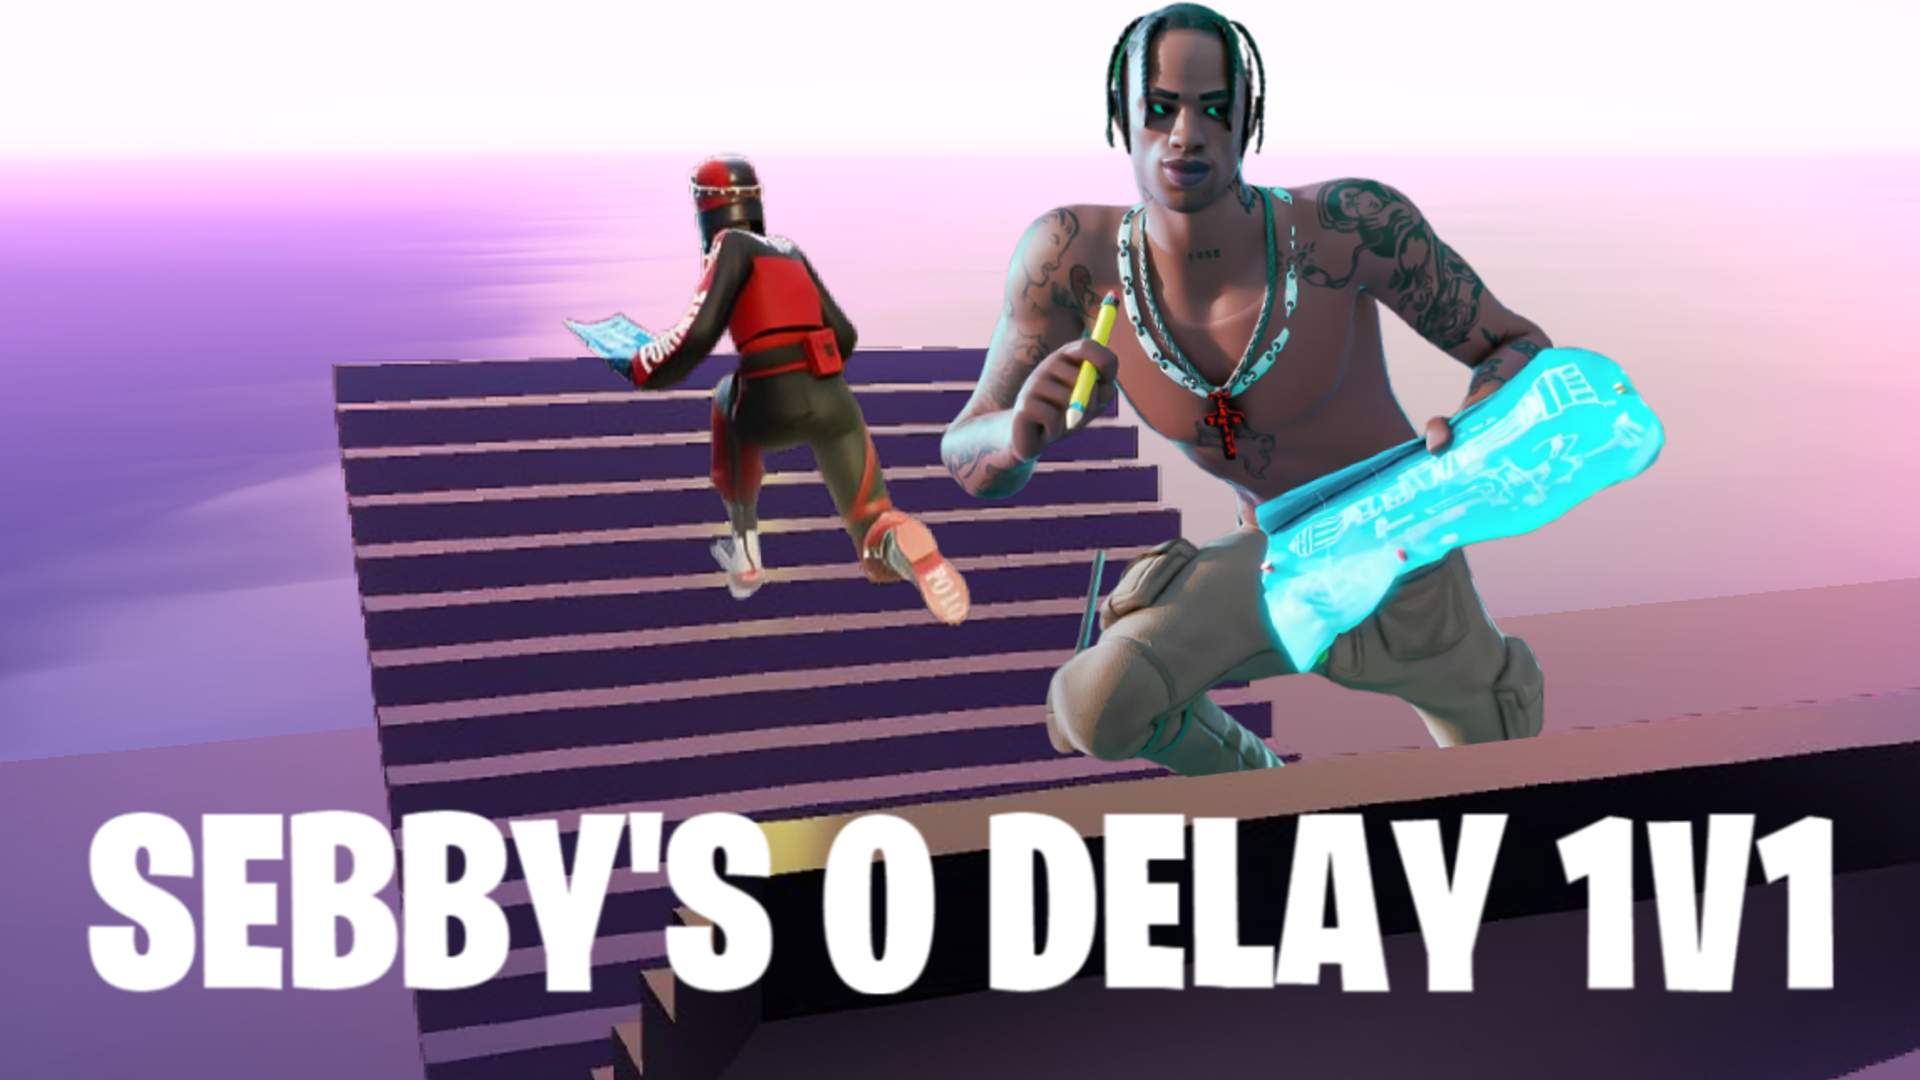 Sebby's 0 Delay 1v1